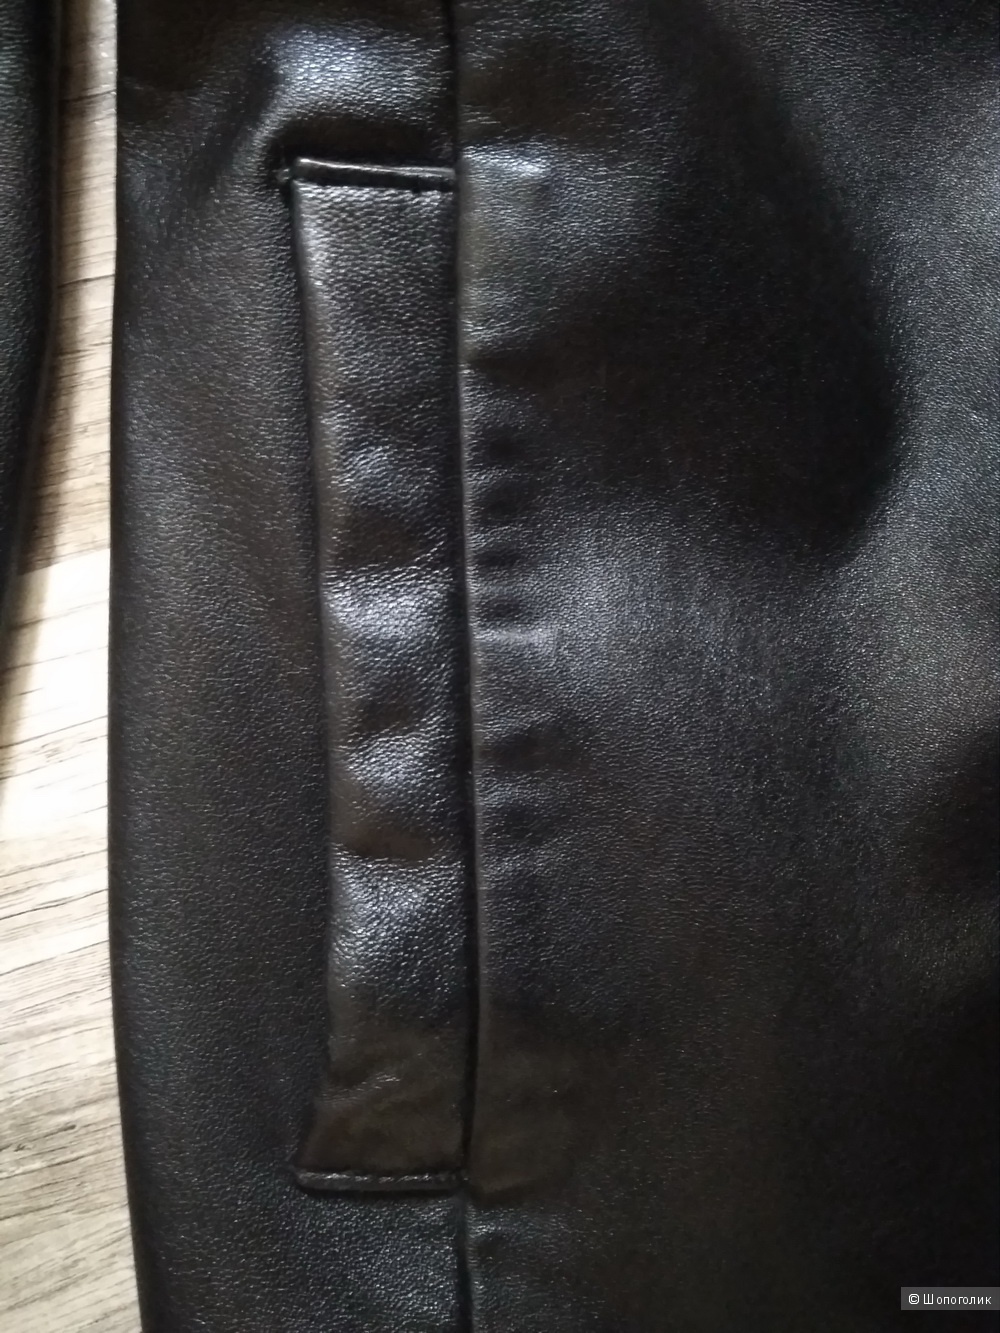 Пиджак кожаный GINA BACCONI размер S